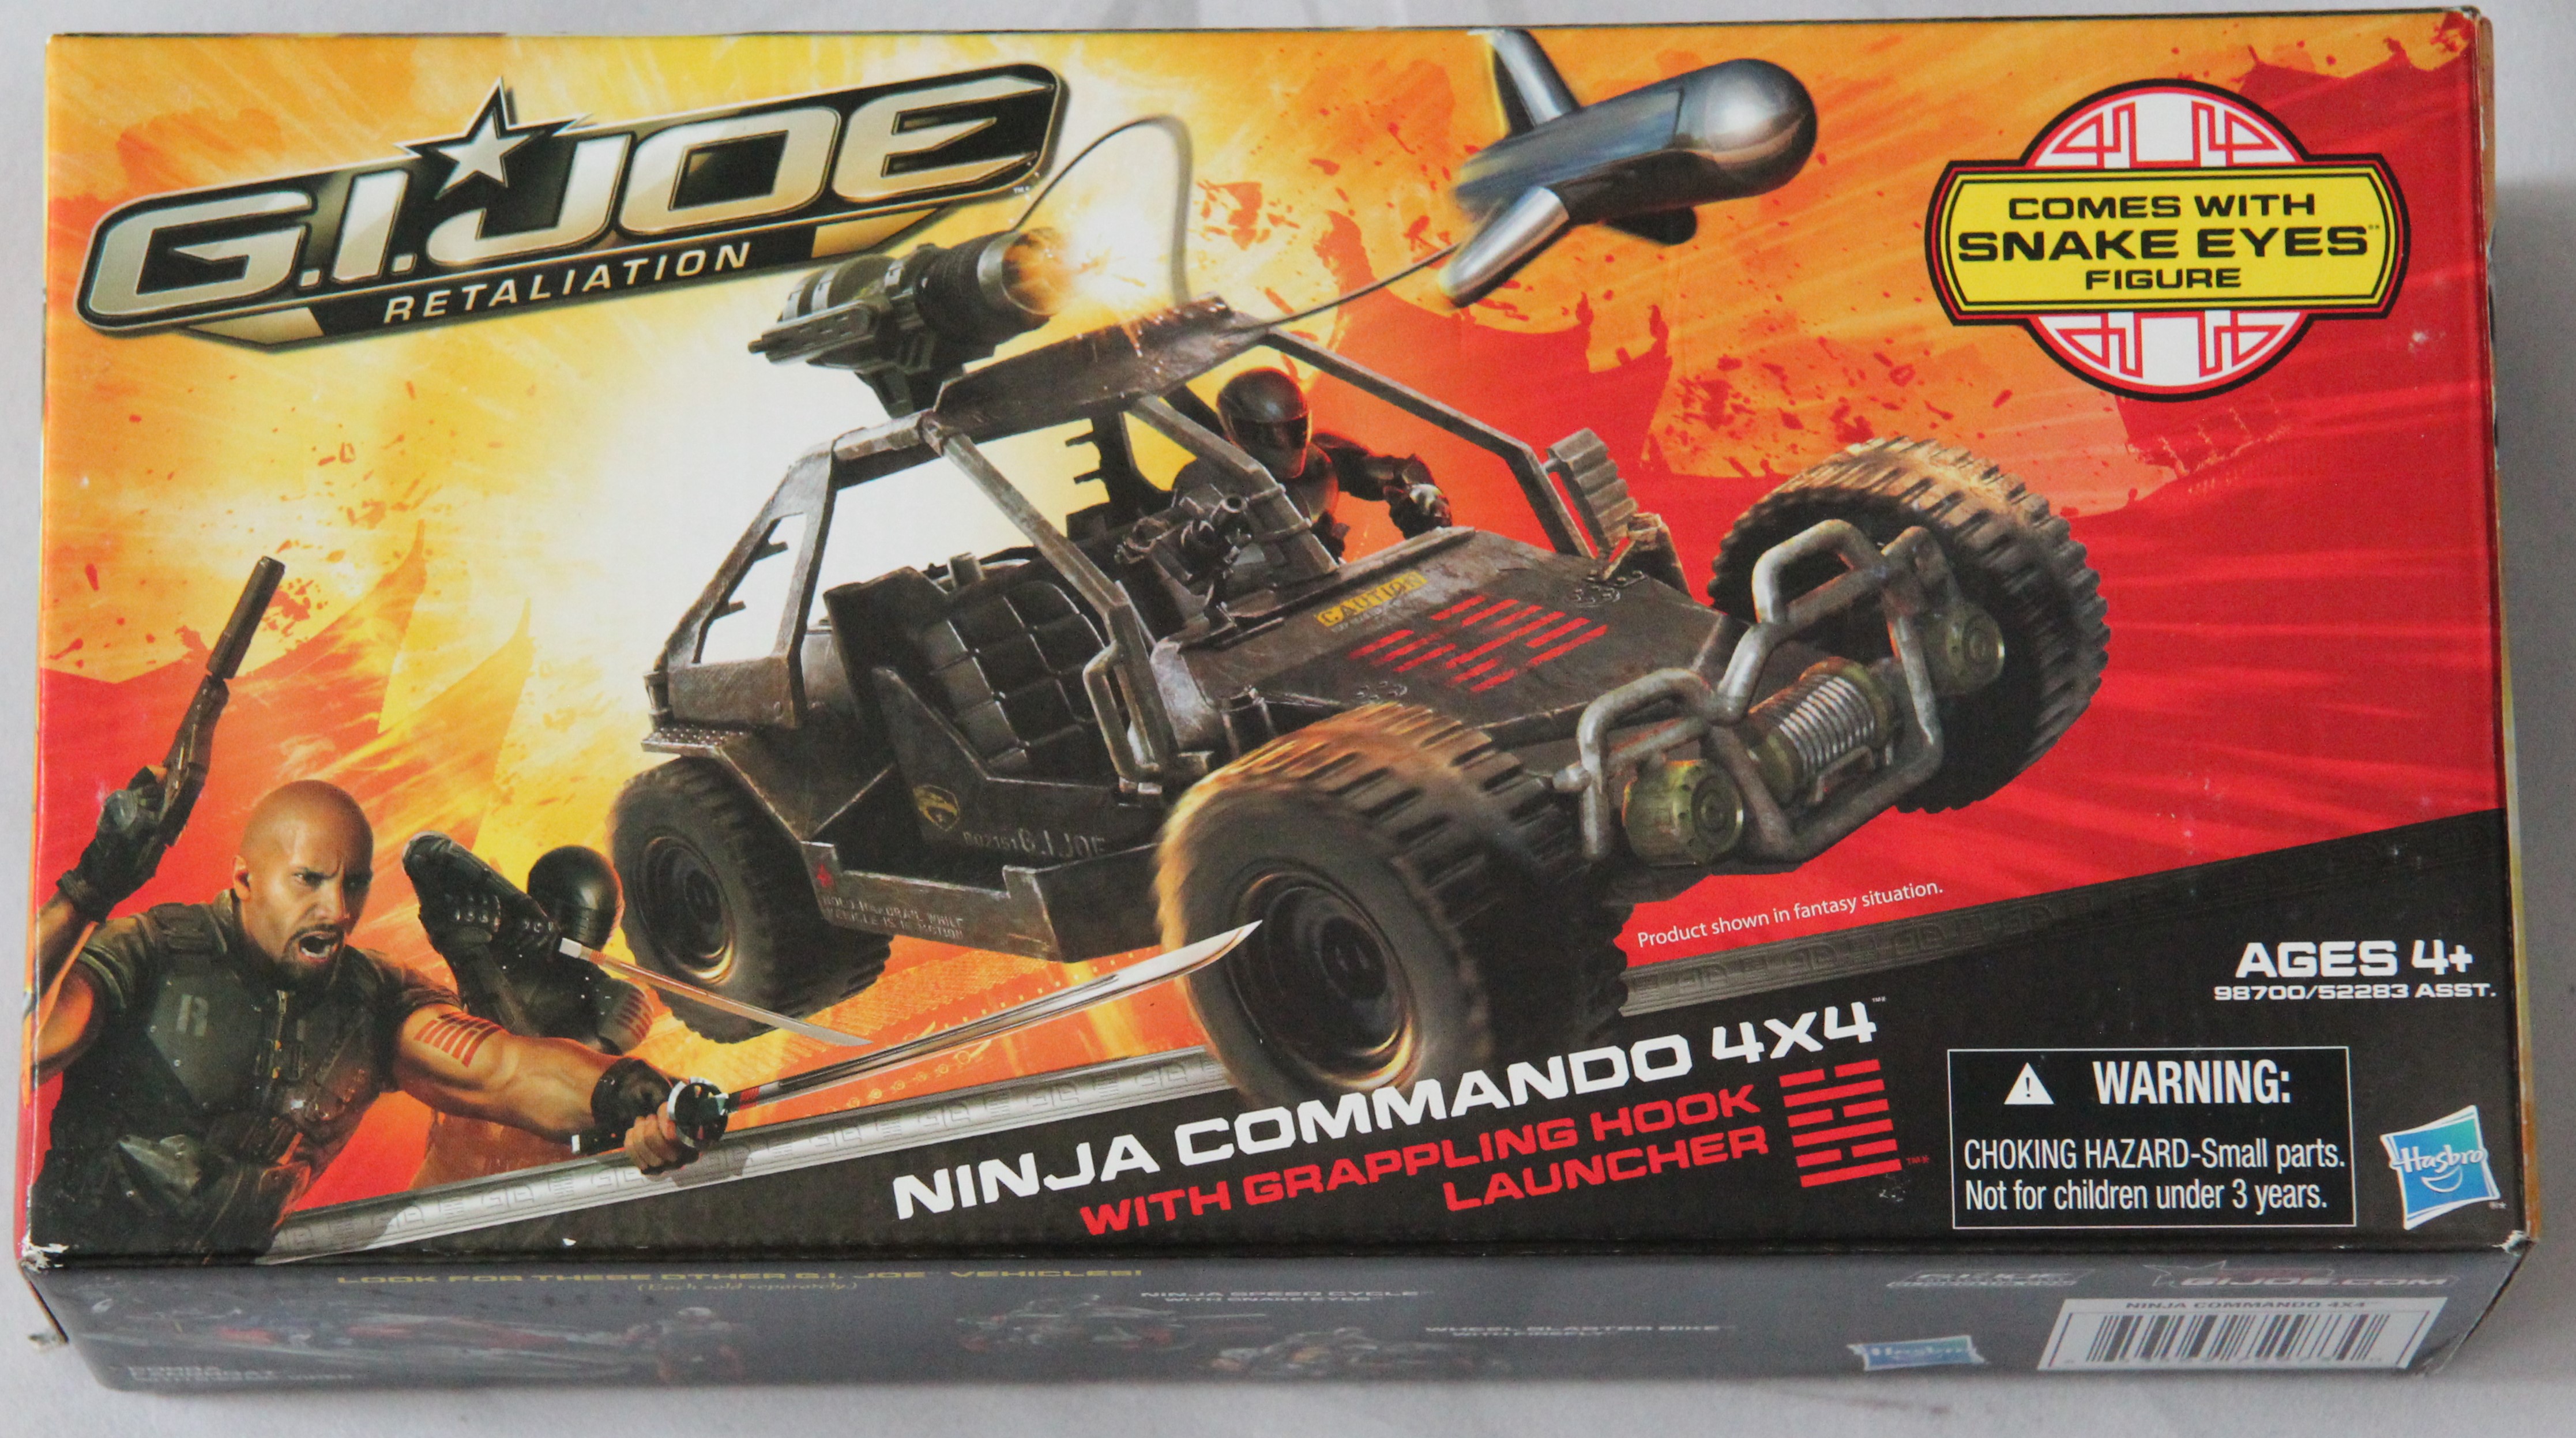 2012 Ninja Commando 4x4